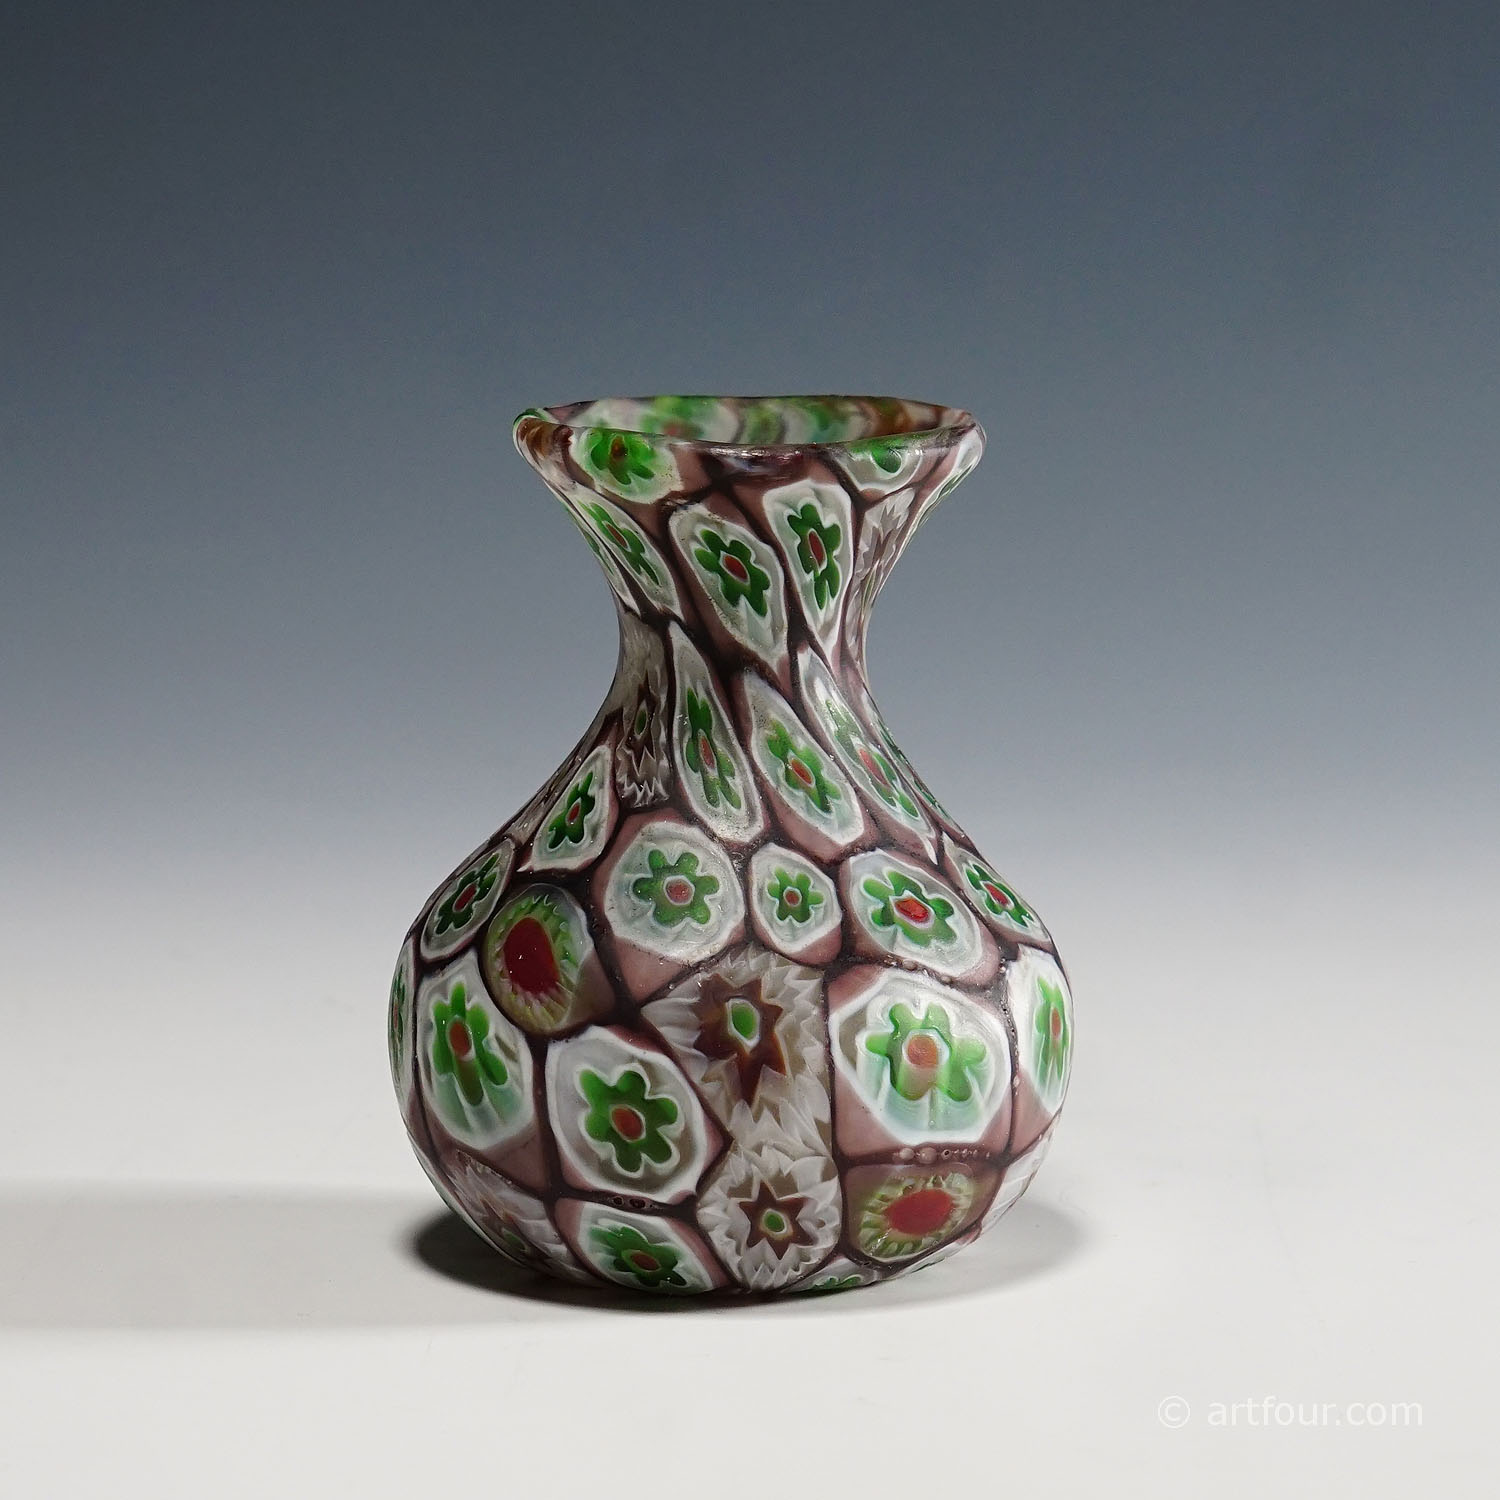 Small Millefiori Vase in Purple, Green and White, Fratelli Toso Murano 1910